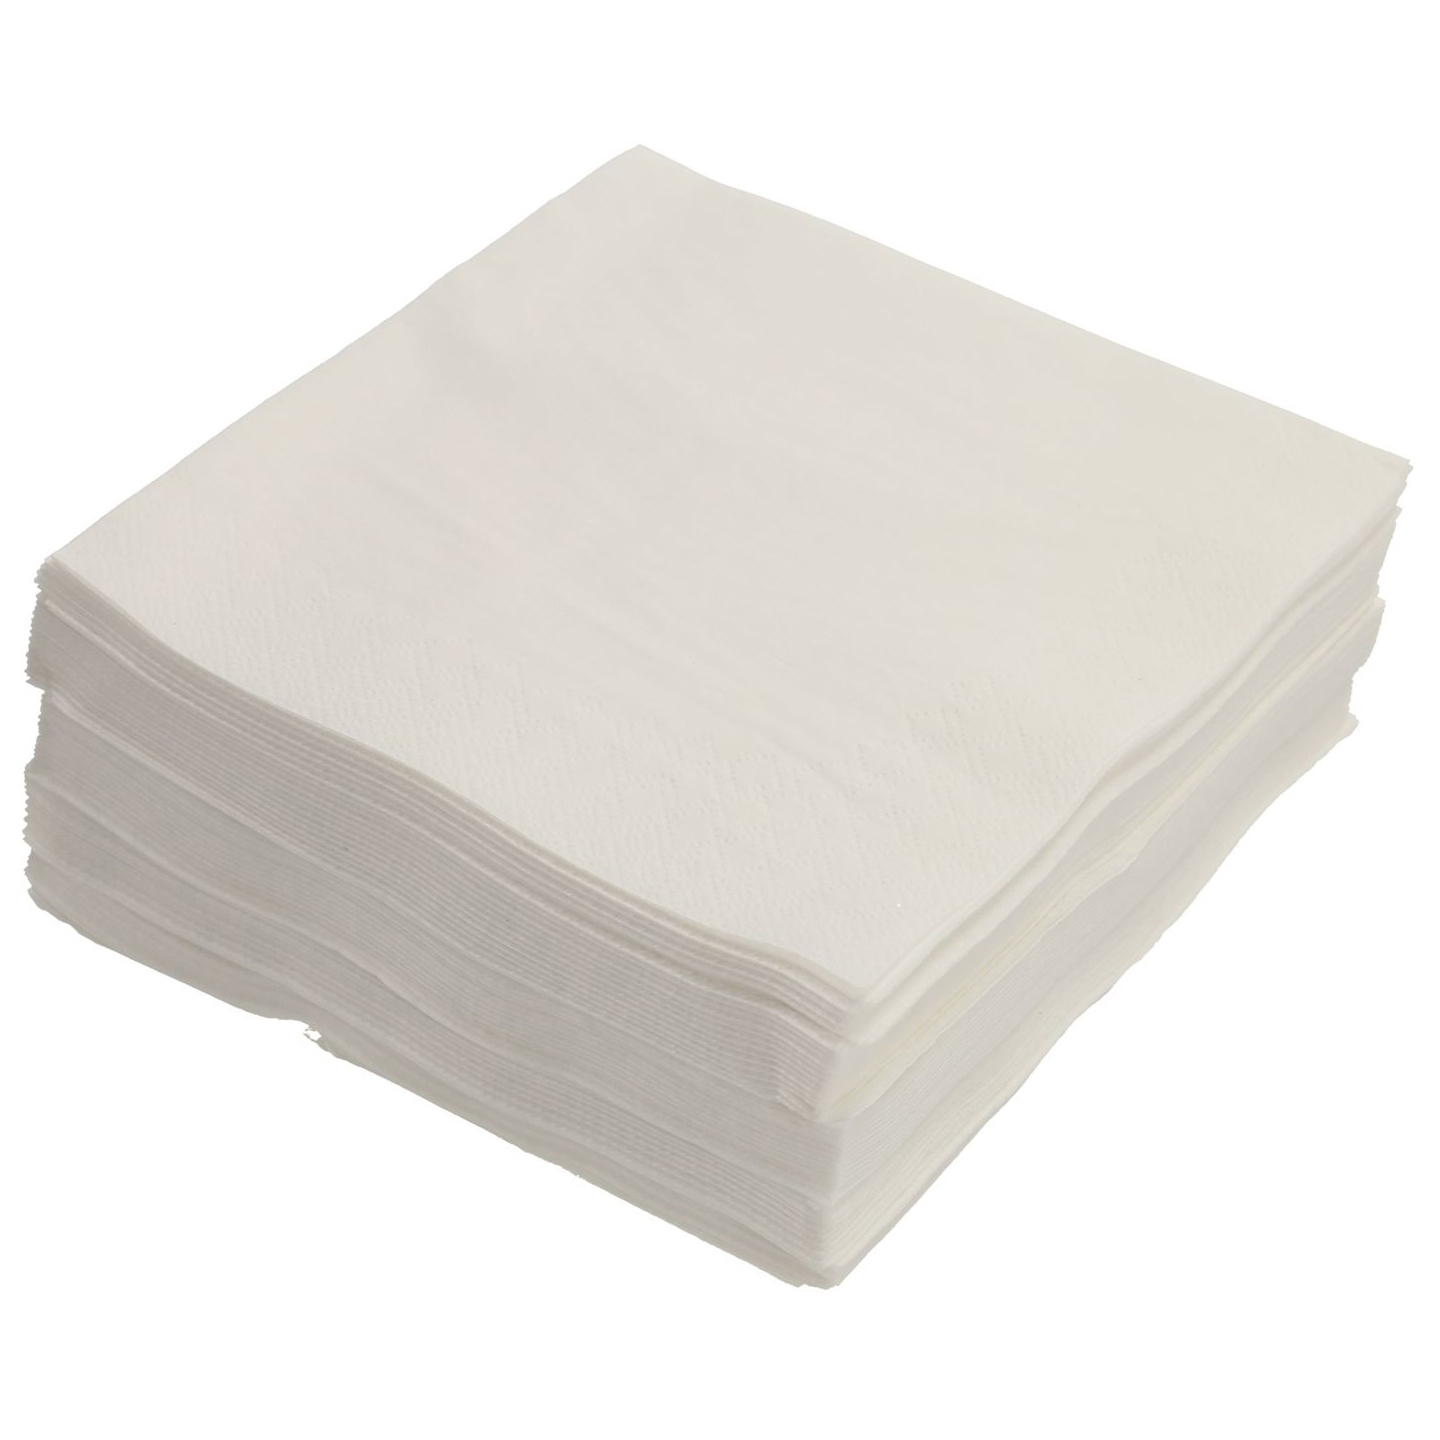 PAPSTAR rviettes 33x33cm PAP86976 3 couches, blanc, 50 pcs 3 couches, blanc, 50 pcs